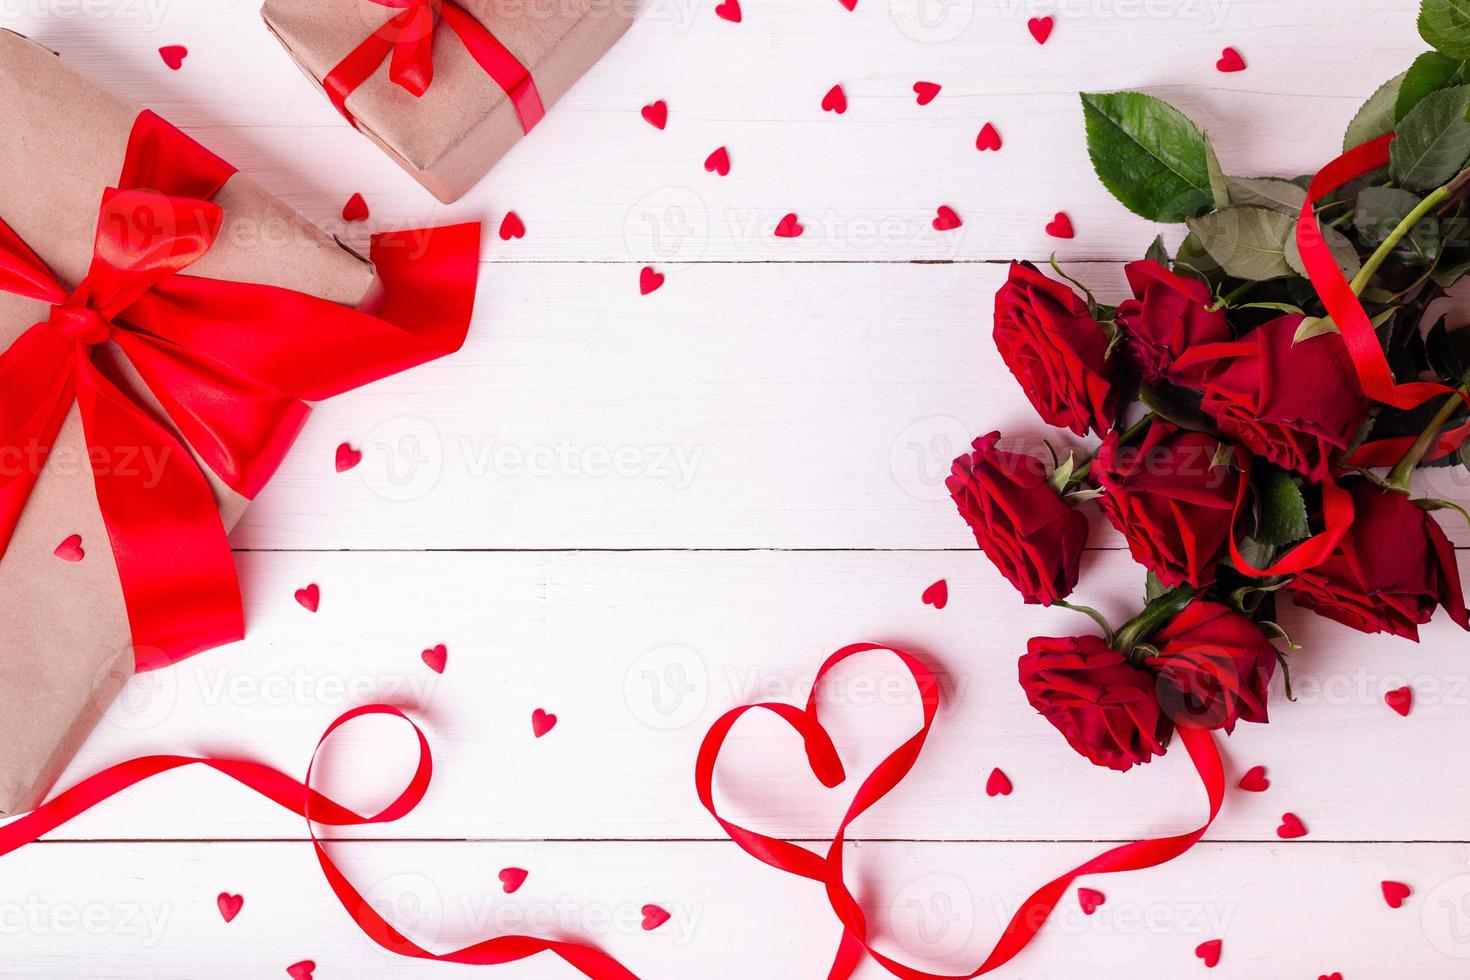 cinta roja en forma de corazón, ramo de rosas, corazones y cajas de regalo envueltas en papel kraft sobre una mesa de madera blanca. foto